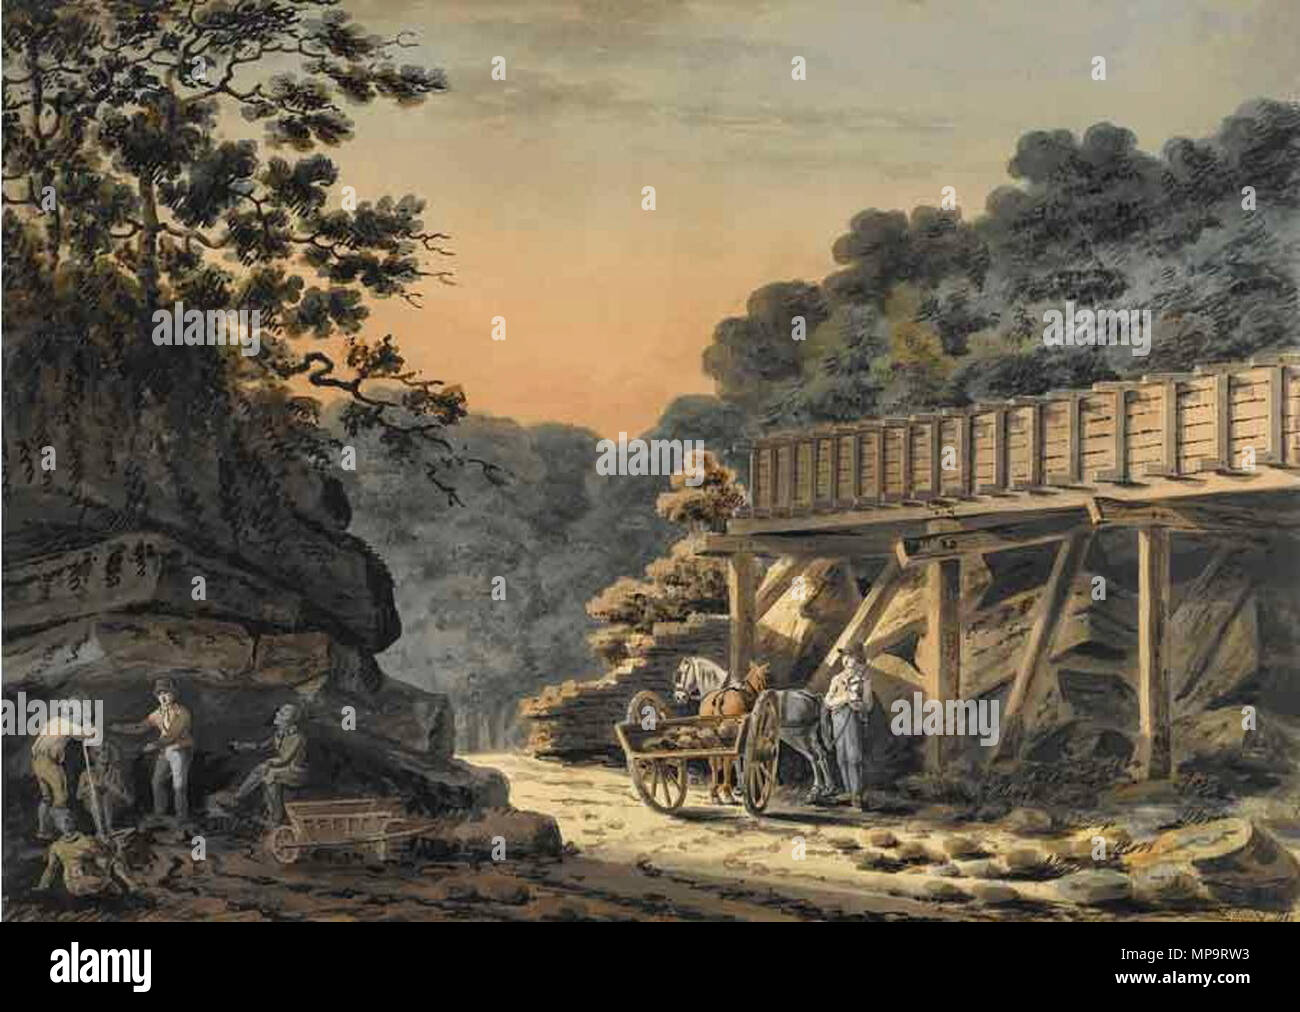 Die Beendigung einer Mill Race auf dem Occoquan, Virginia 1823. 834 Lukas Robins - Kündigung einer Mühle Rennen auf dem Occoquan, Virginia, 1823 Stockfoto